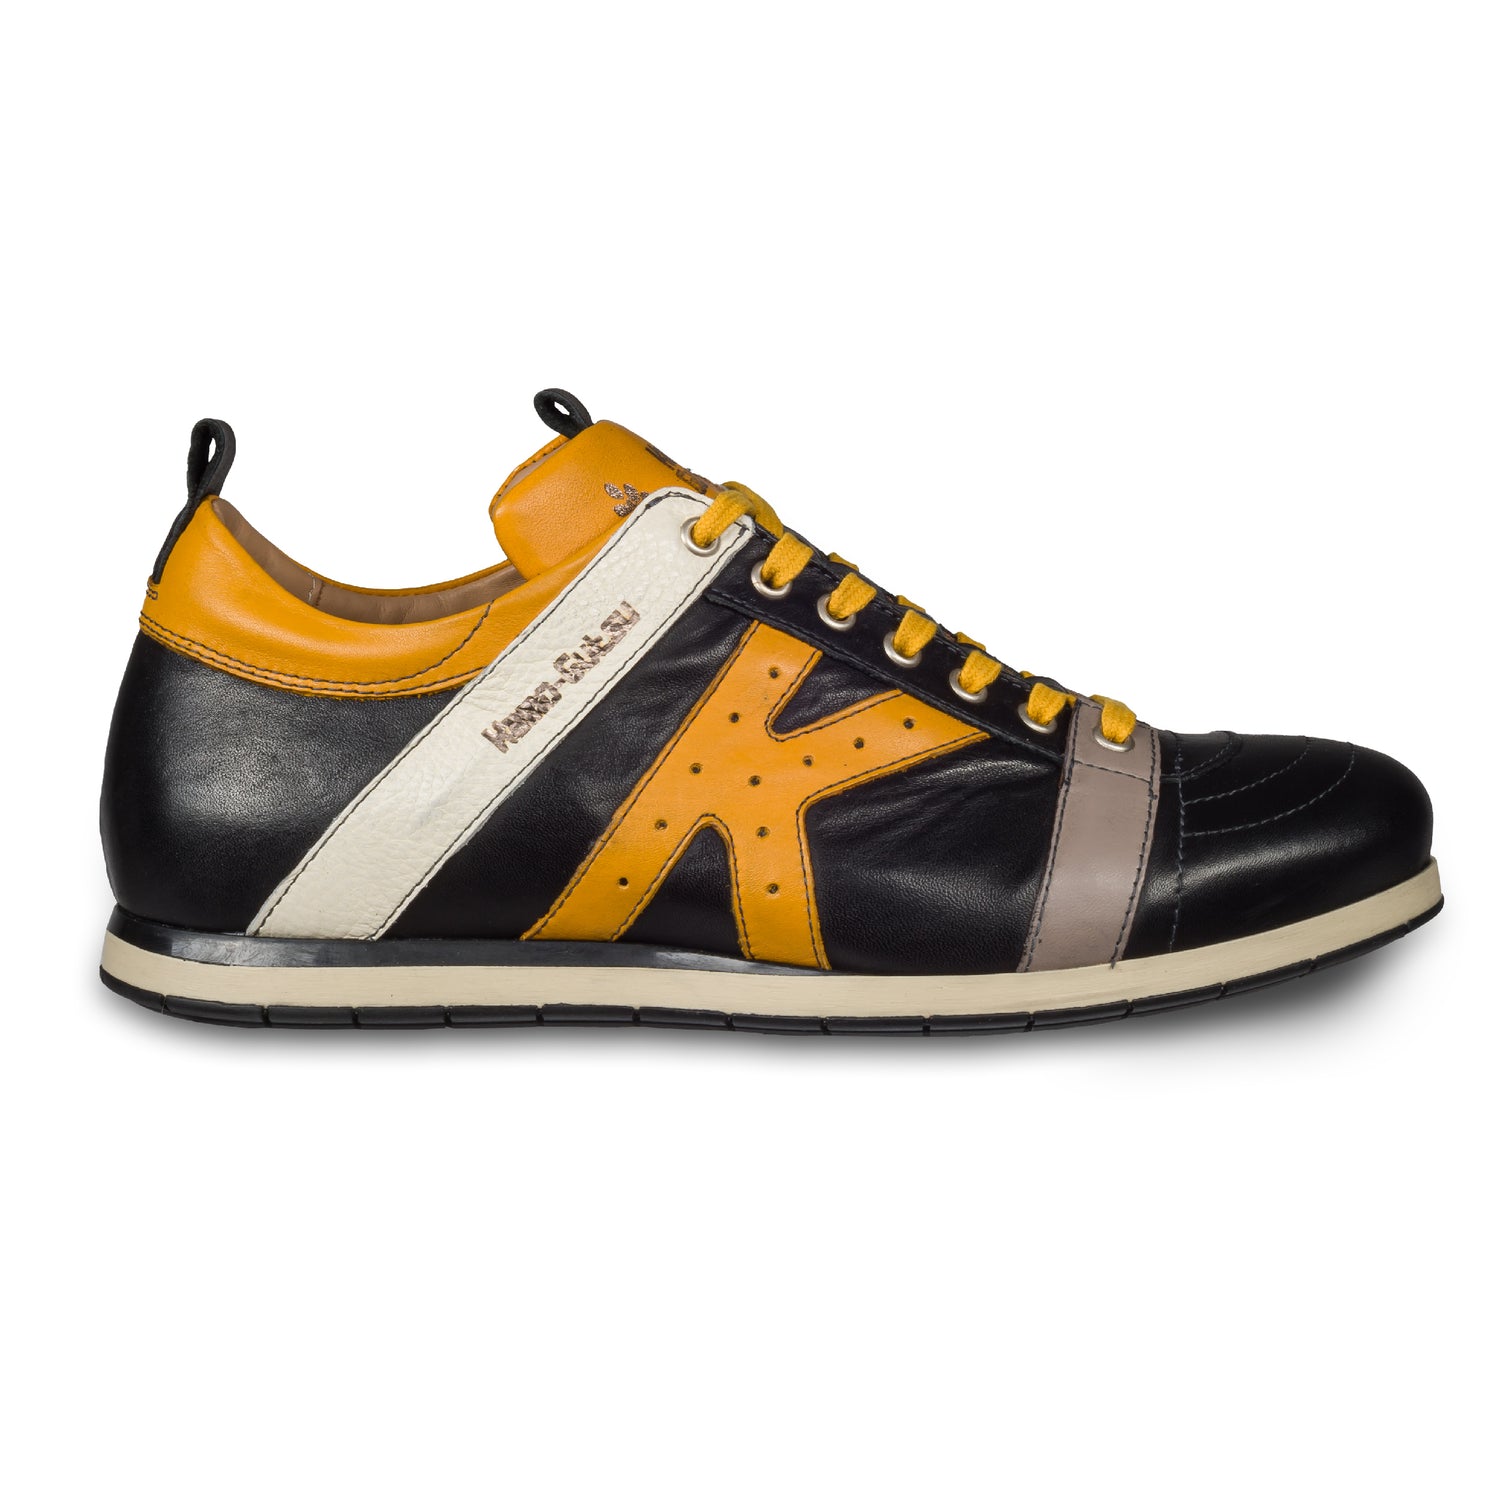 KAMO-GUTSU Italienische Leder Sneaker, schwarz mit gelb und weiß (TIFO-042 nero girasole). Handgefertigt in Italien. Seitliche Ansicht der Außenseite rechter Schuh.